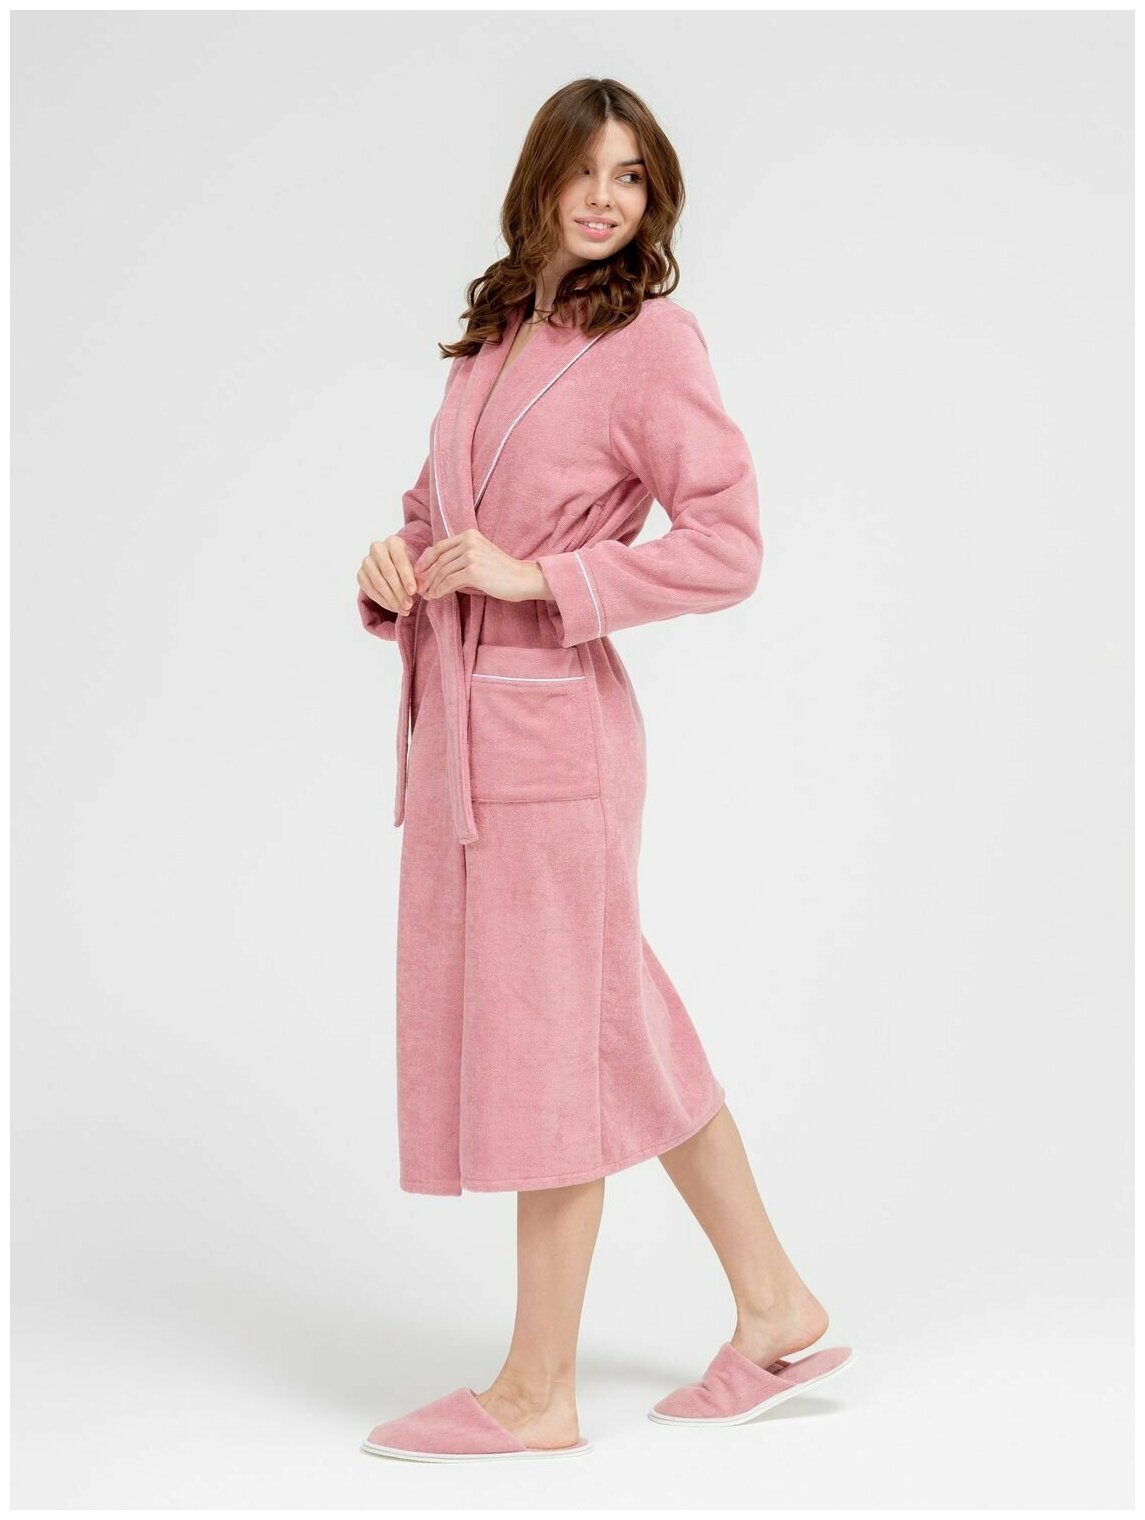 Женский махровый халат с кантом Росхалат, пудрово-розовый. Размер 46-48 - фотография № 6